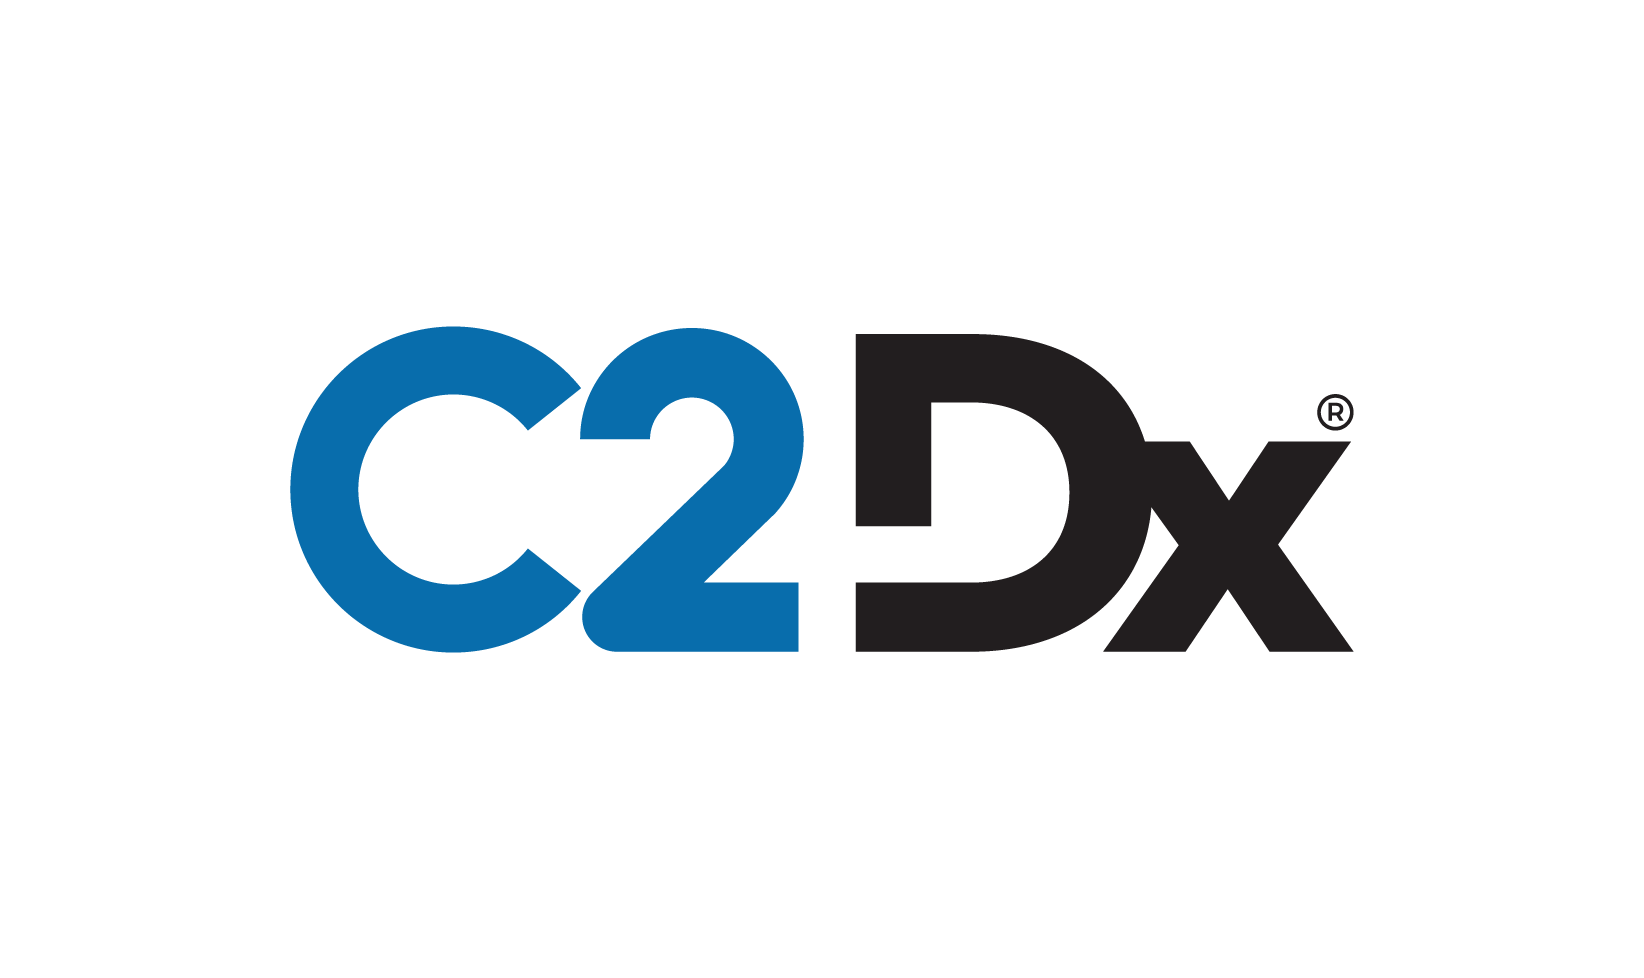 C2Dx